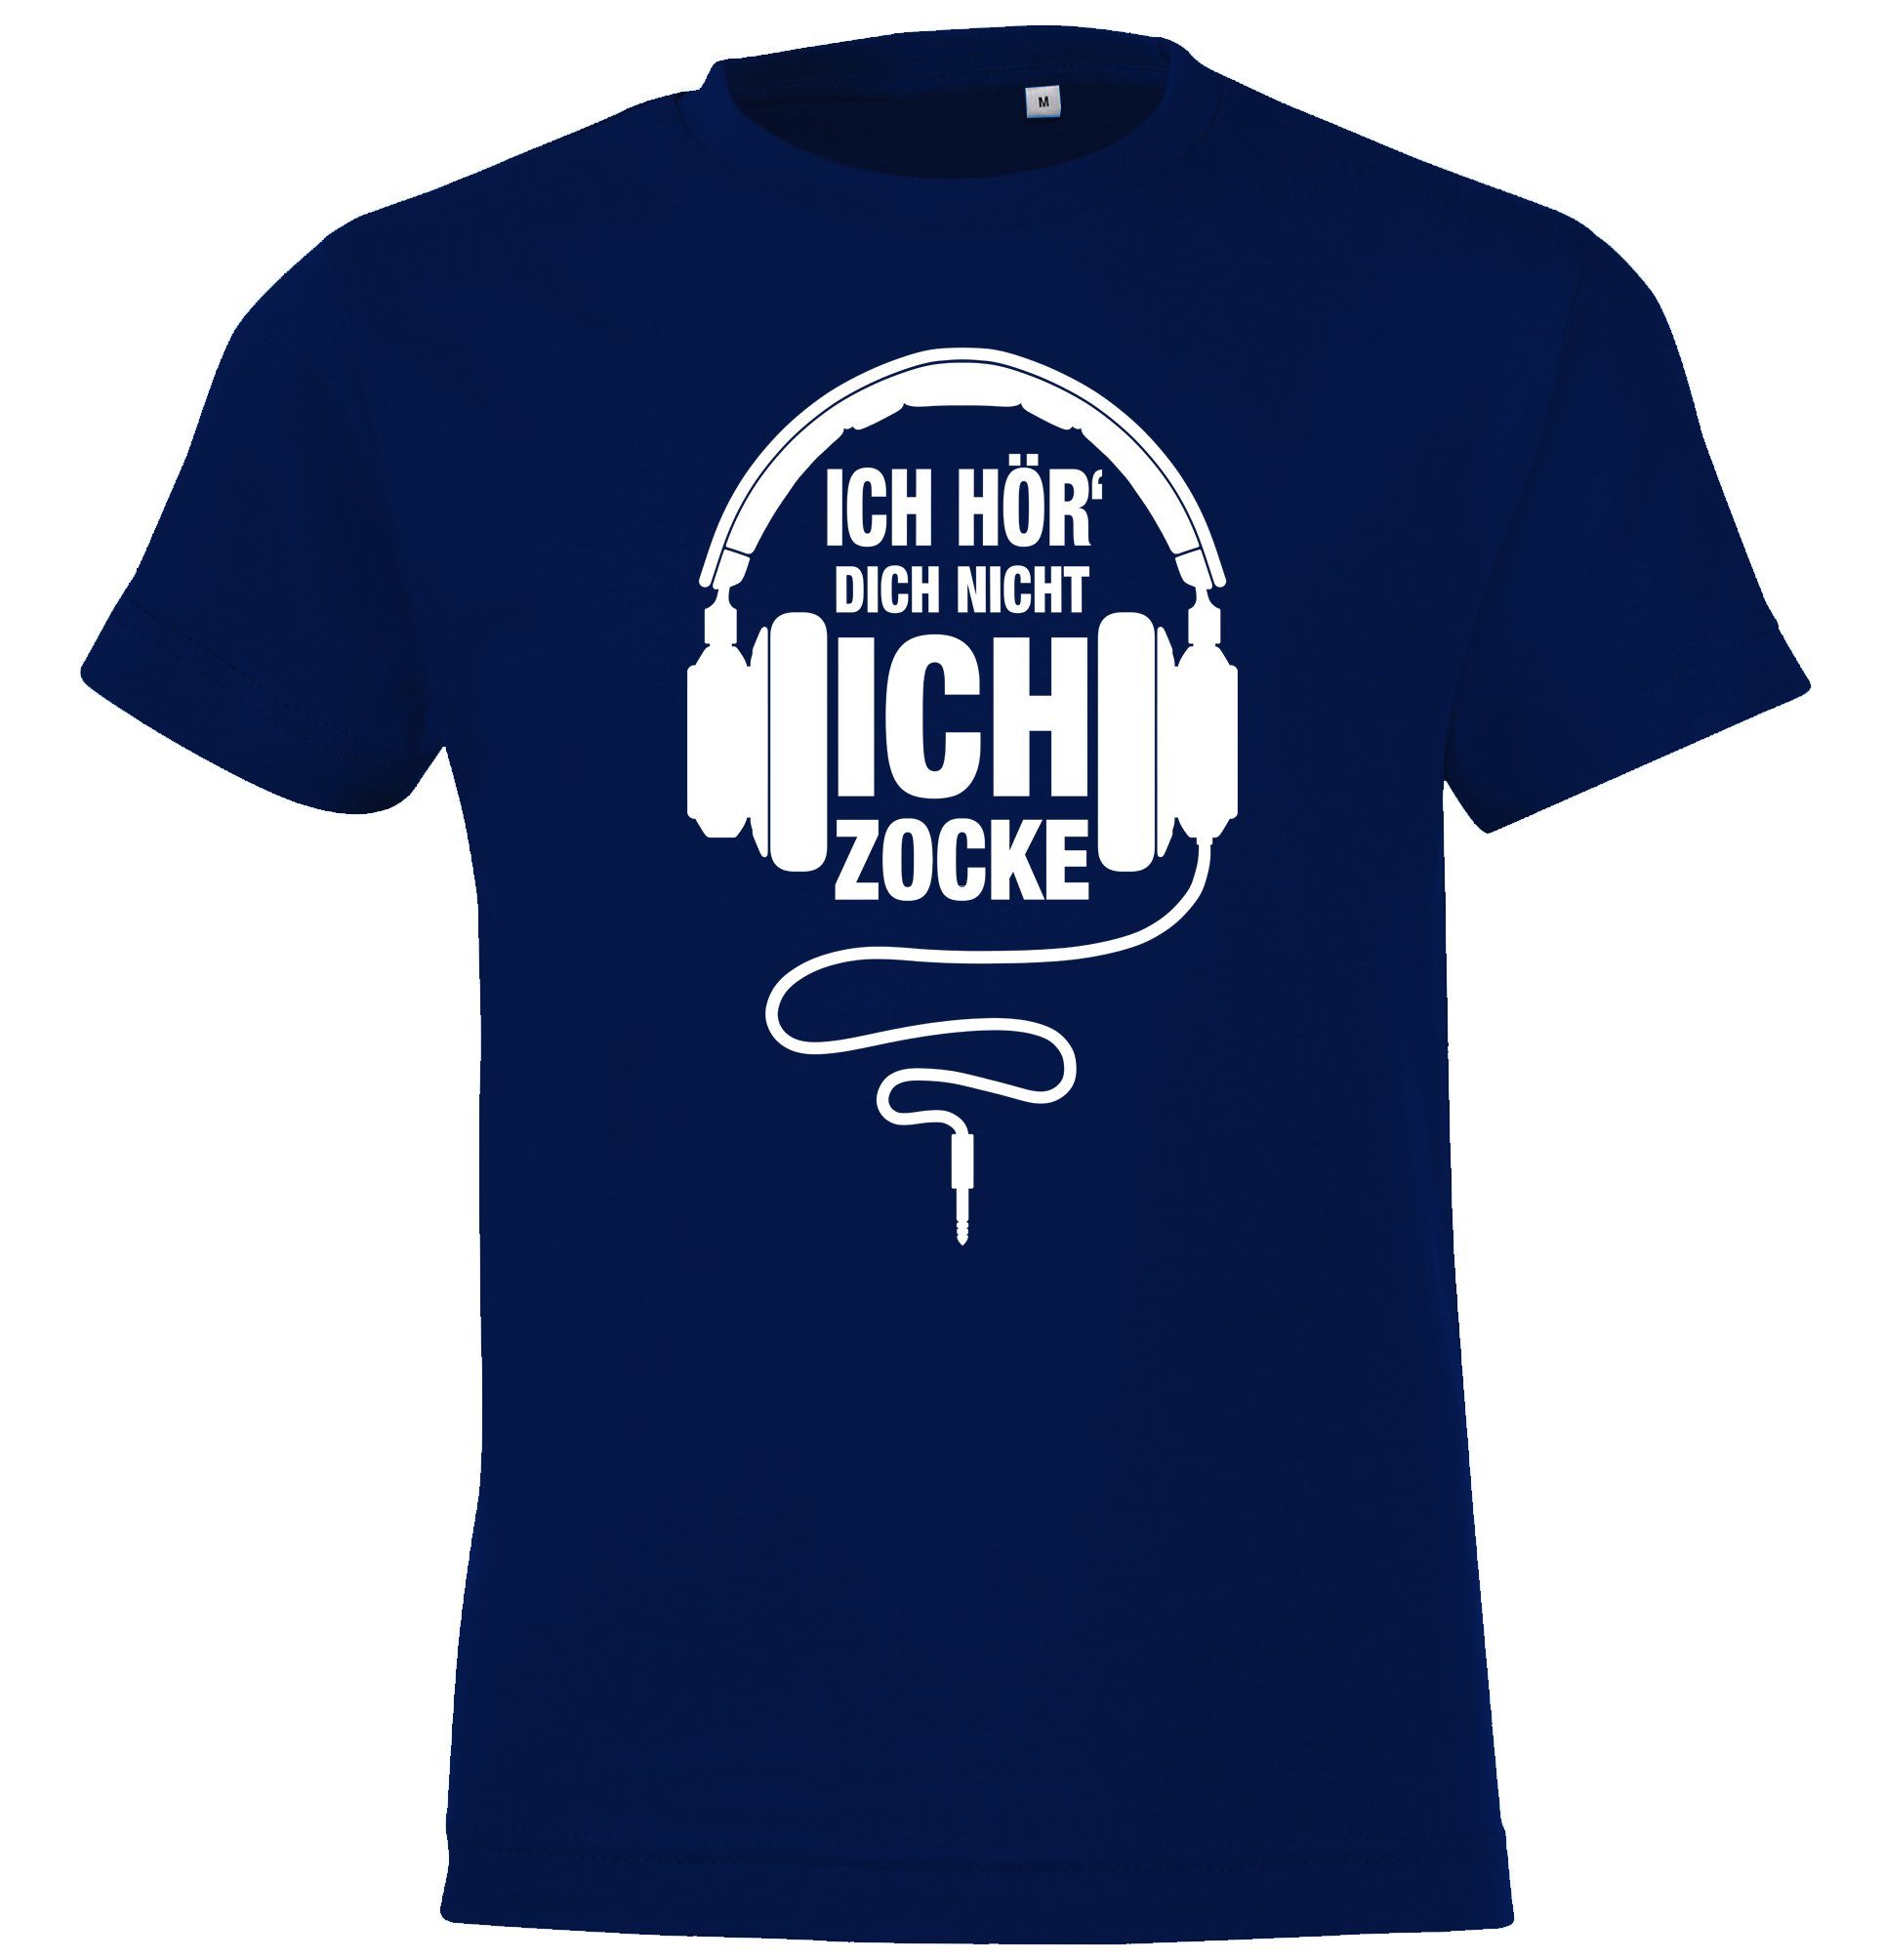 Ich lustigem Gamer Kinder Youth Navyblau Zocke Frontprint T-Shirt Shirt Designz mit